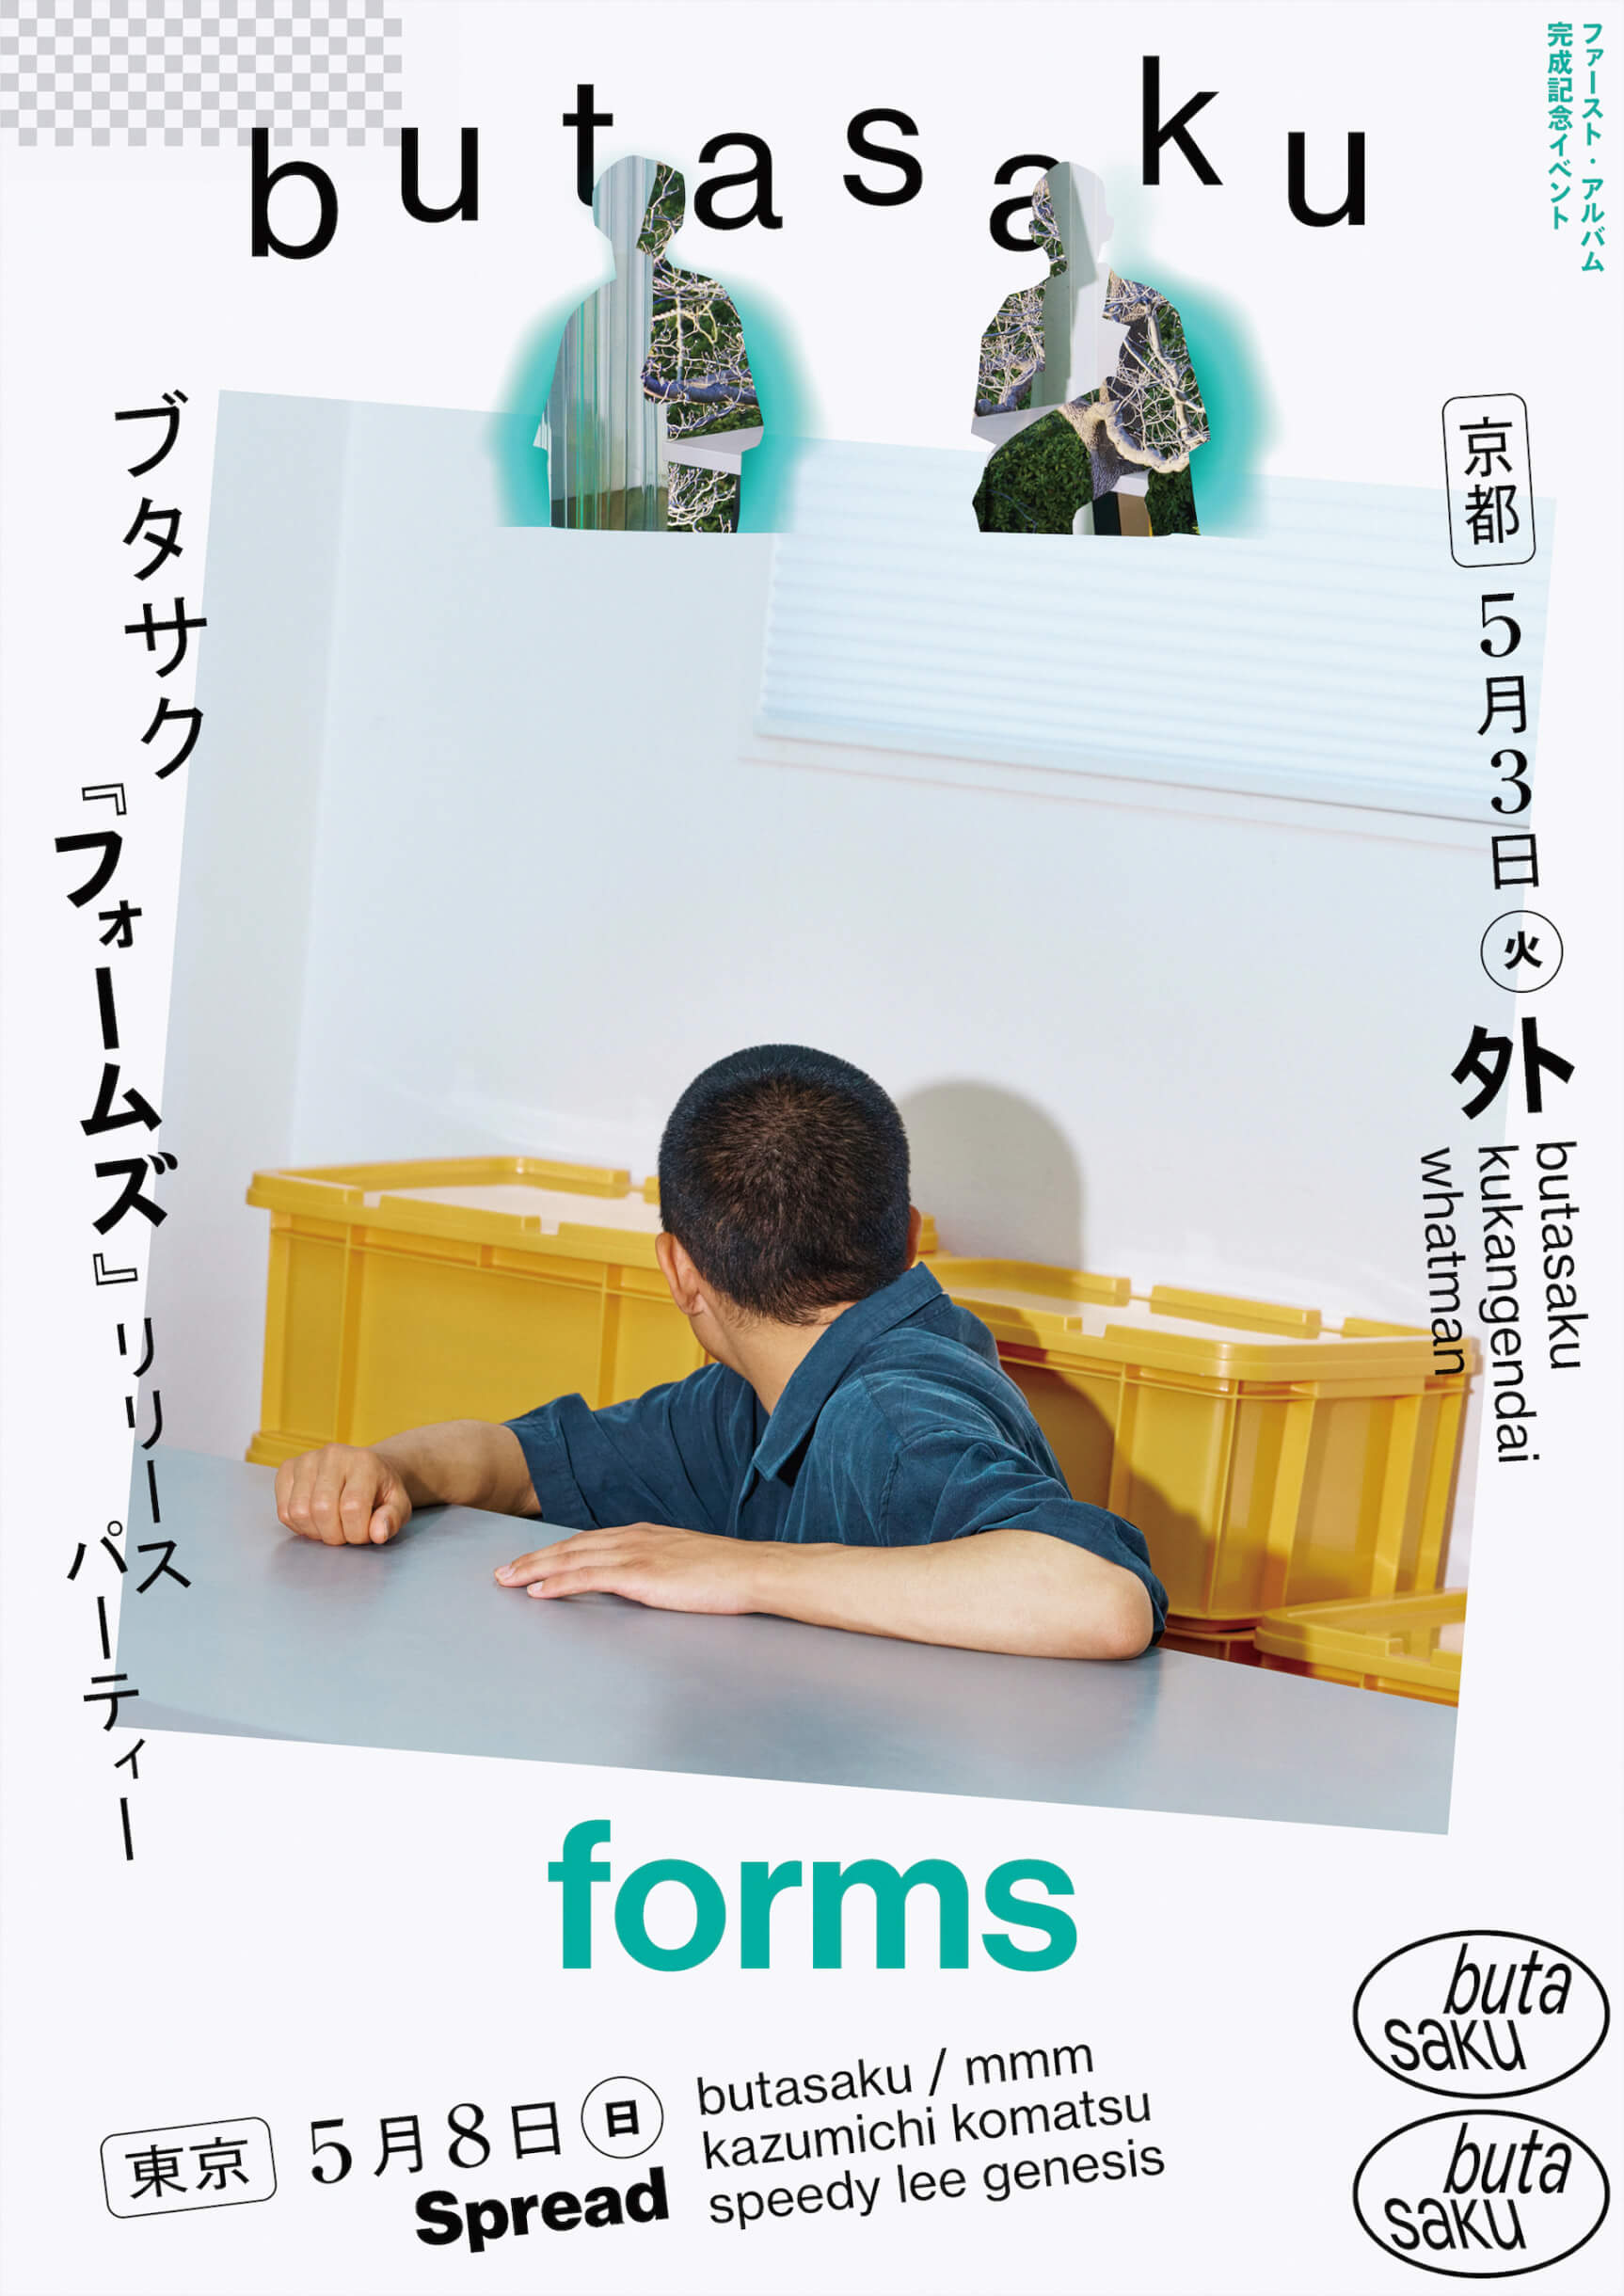 butasaku、1stアルバム『forms』のリリースパーティーが東京と京都で開催｜mmm、Kazumichi Komatsu、空間現代らがゲスト出演 music_220413_butasaku-220415_02